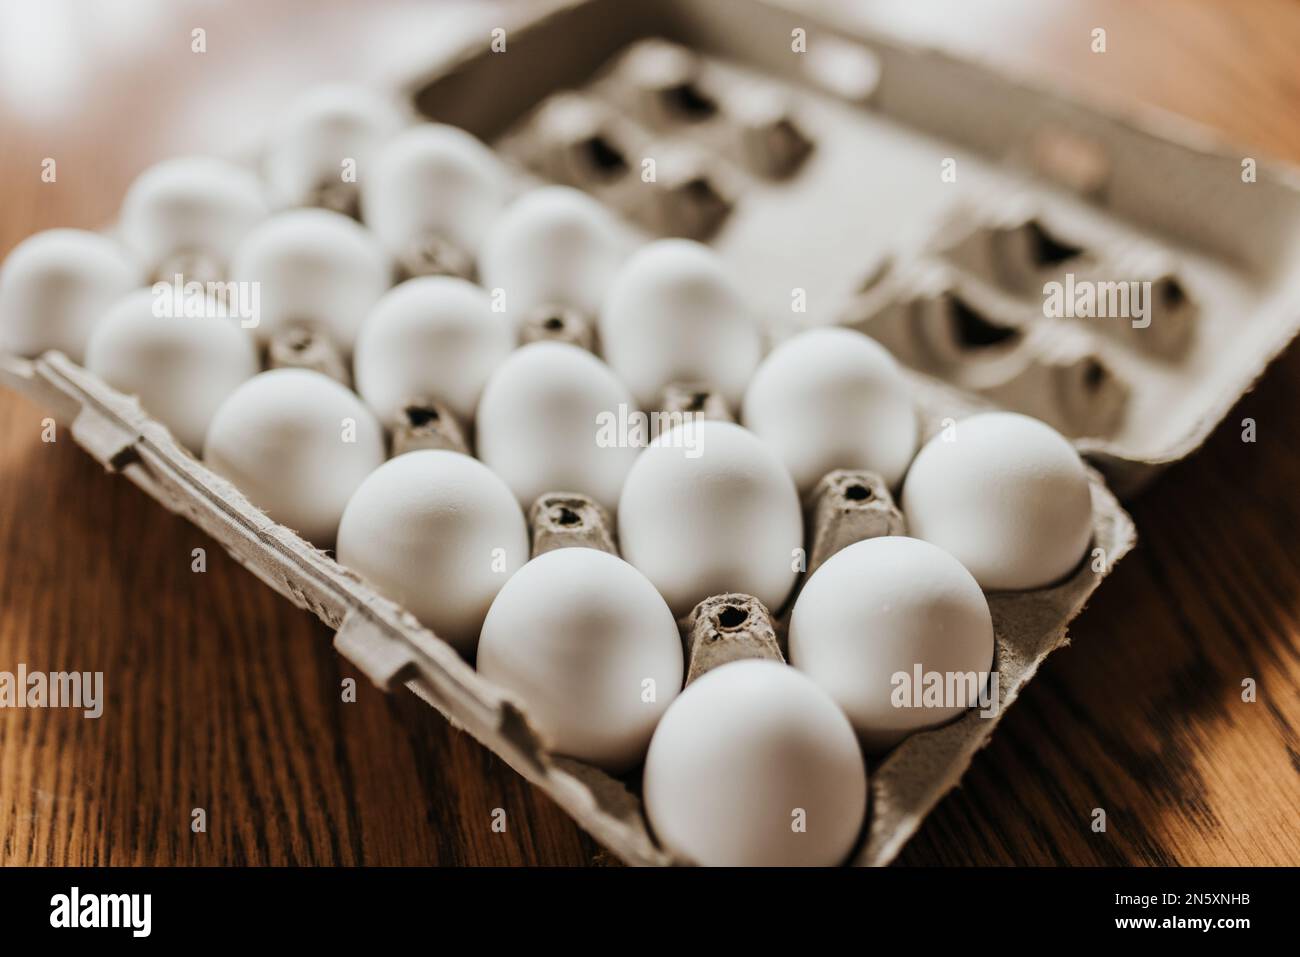 Nahaufnahme des offenen Kartons mit Frischwaren, die weiße Eier gekauft haben Stockfoto